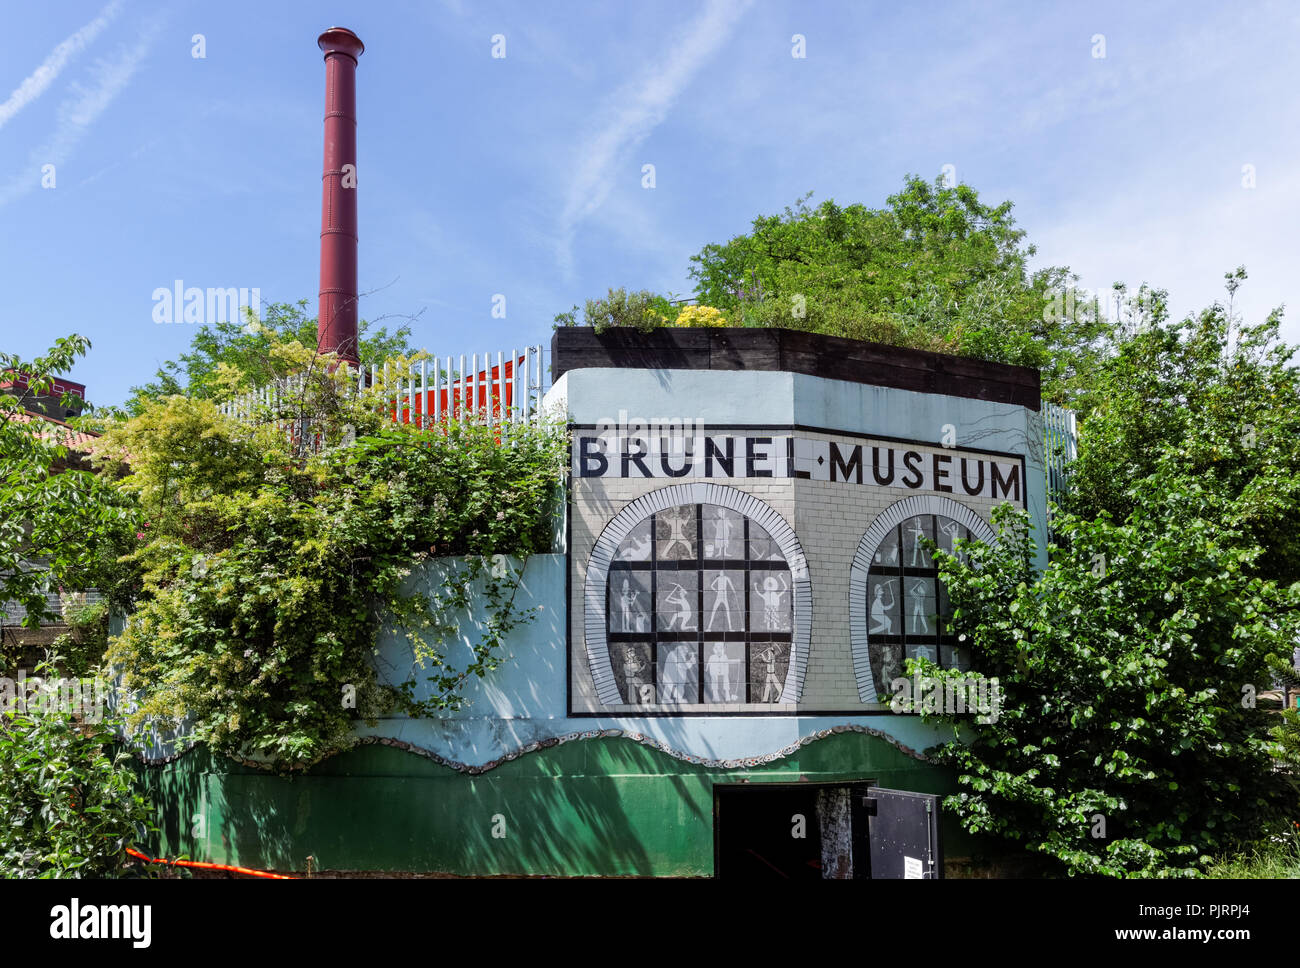 The Brunel Museum, Rotherhithe, London, England, United Kingdom, UK Stock Photo